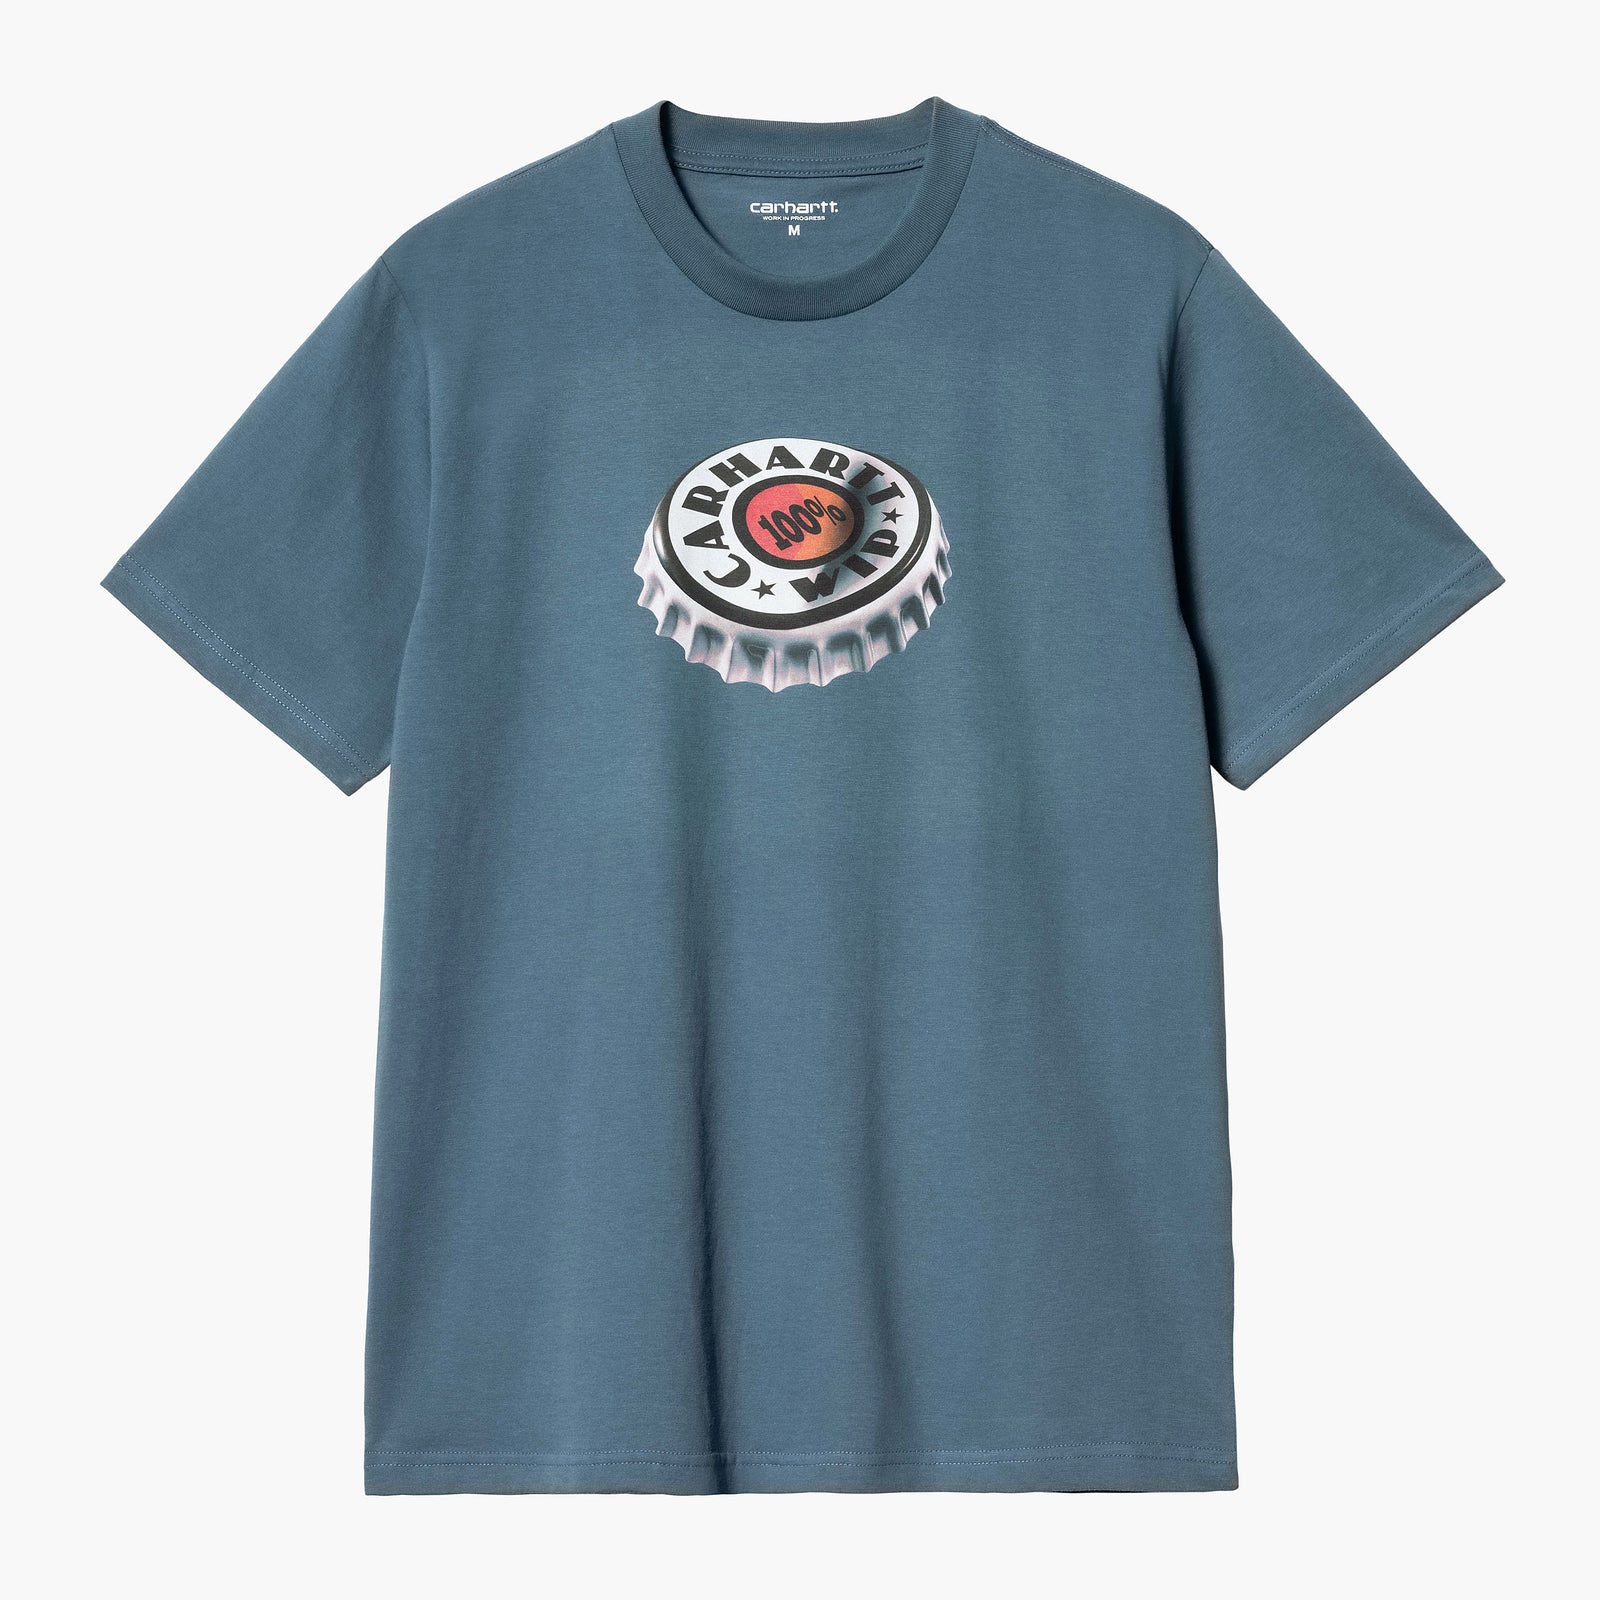 S/s Bottle Cap T-shirt Naval